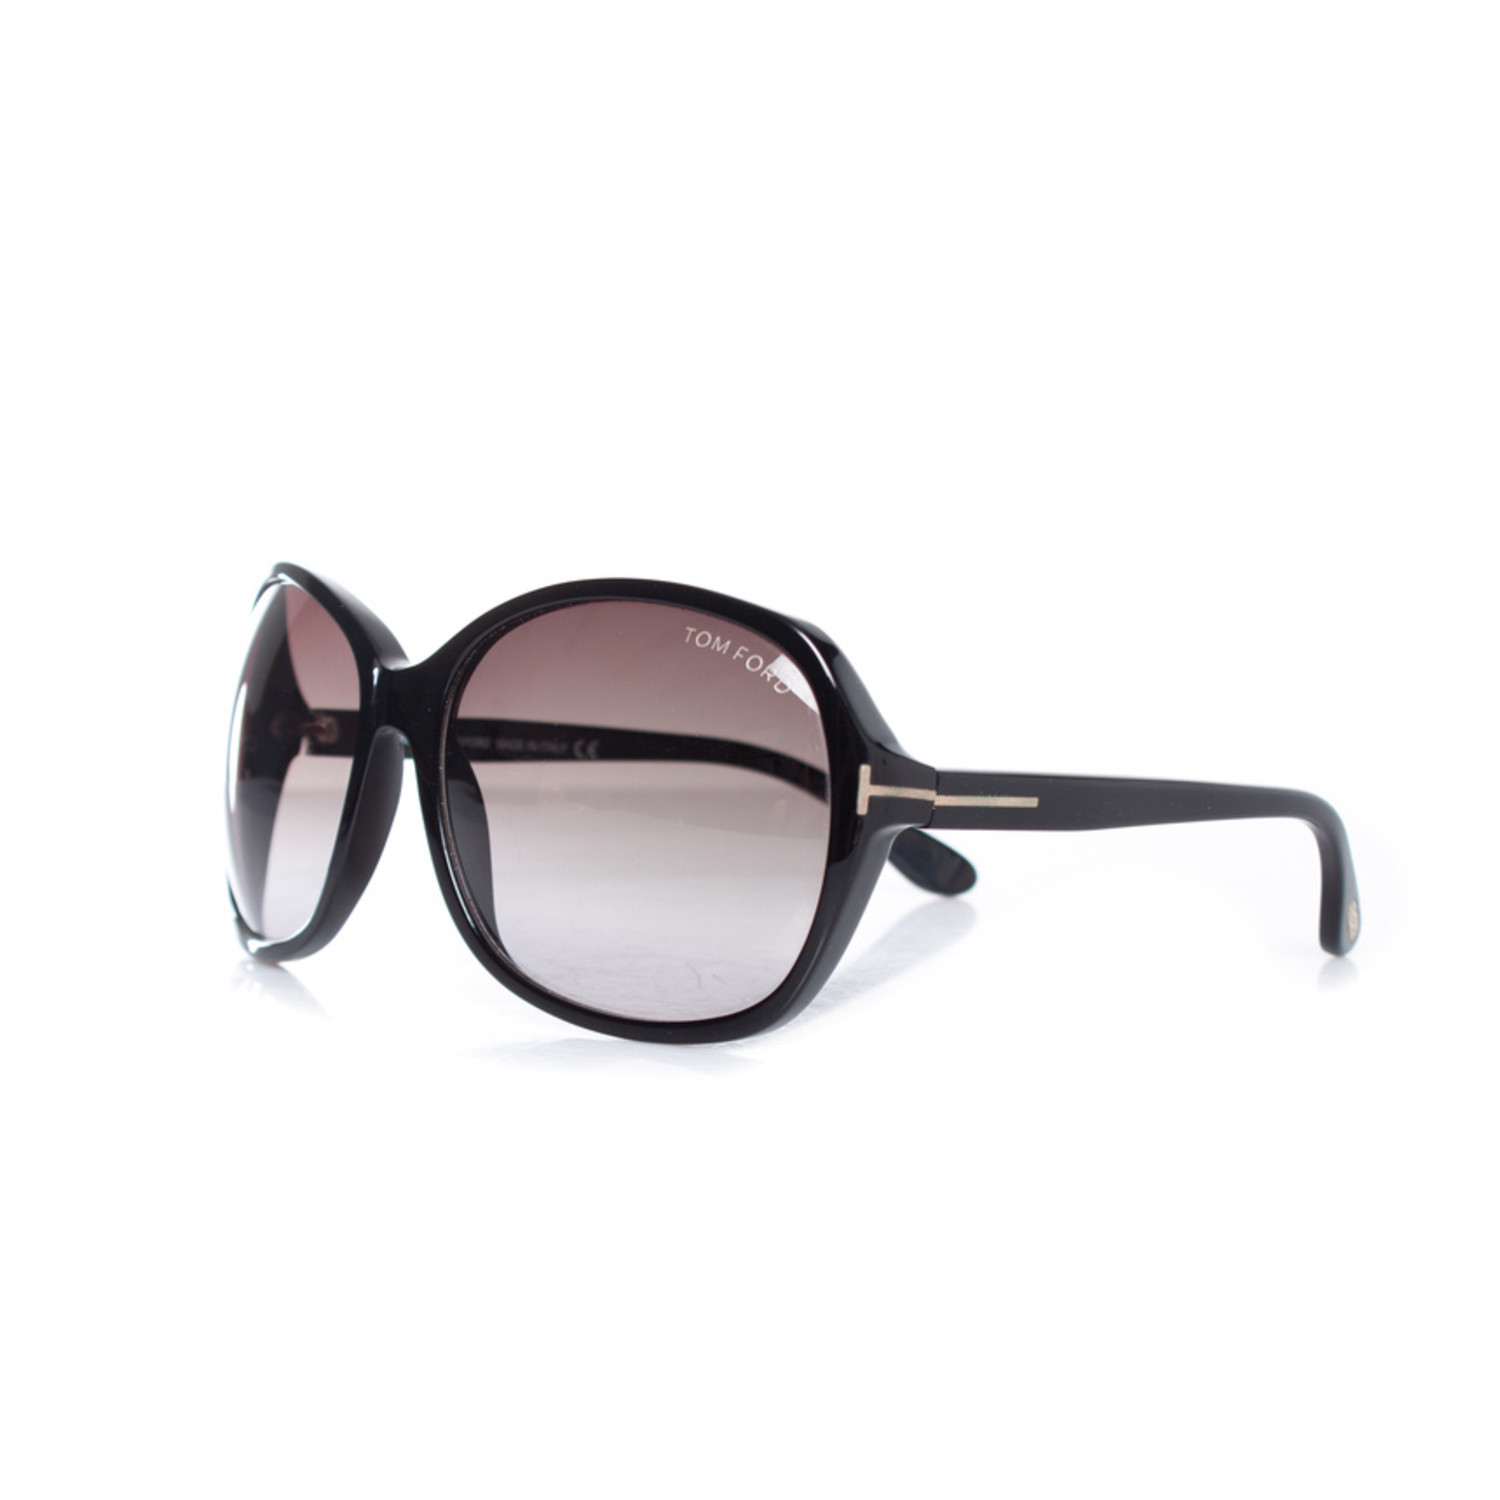 Tom Ford, Black Sheila sunglasses - Unique Designer Pieces